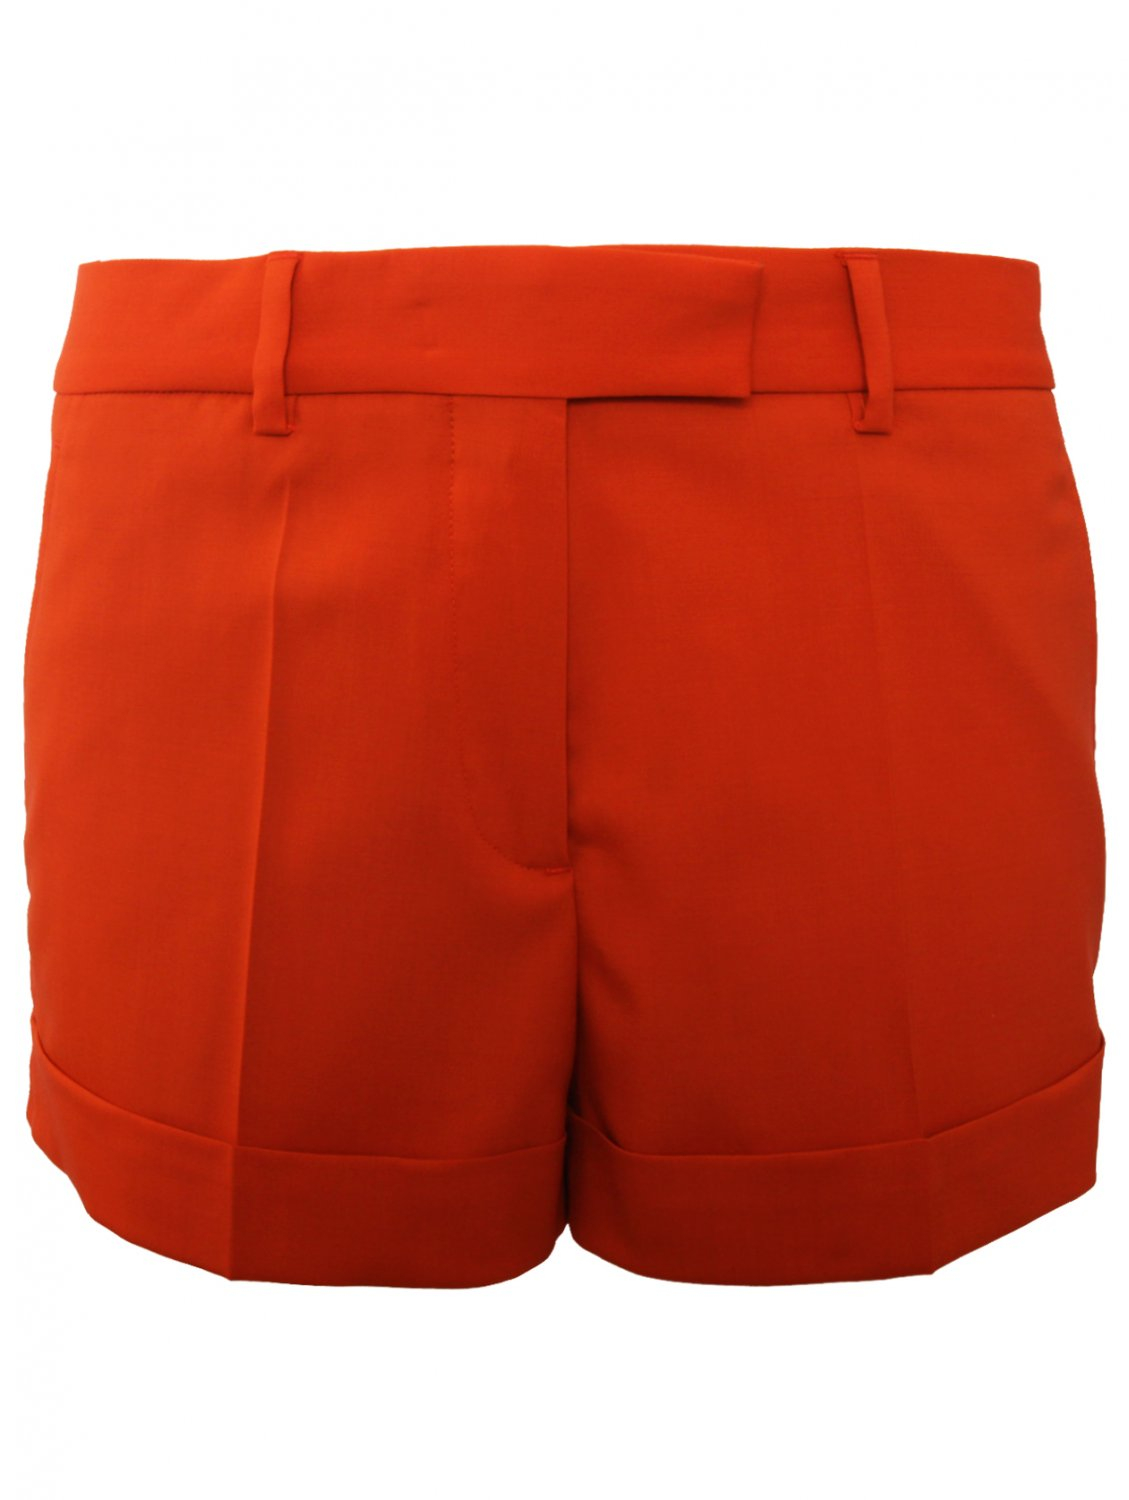 Jean Paul Gaultier Woven Tailored Shorts Orange in Orange | Lyst